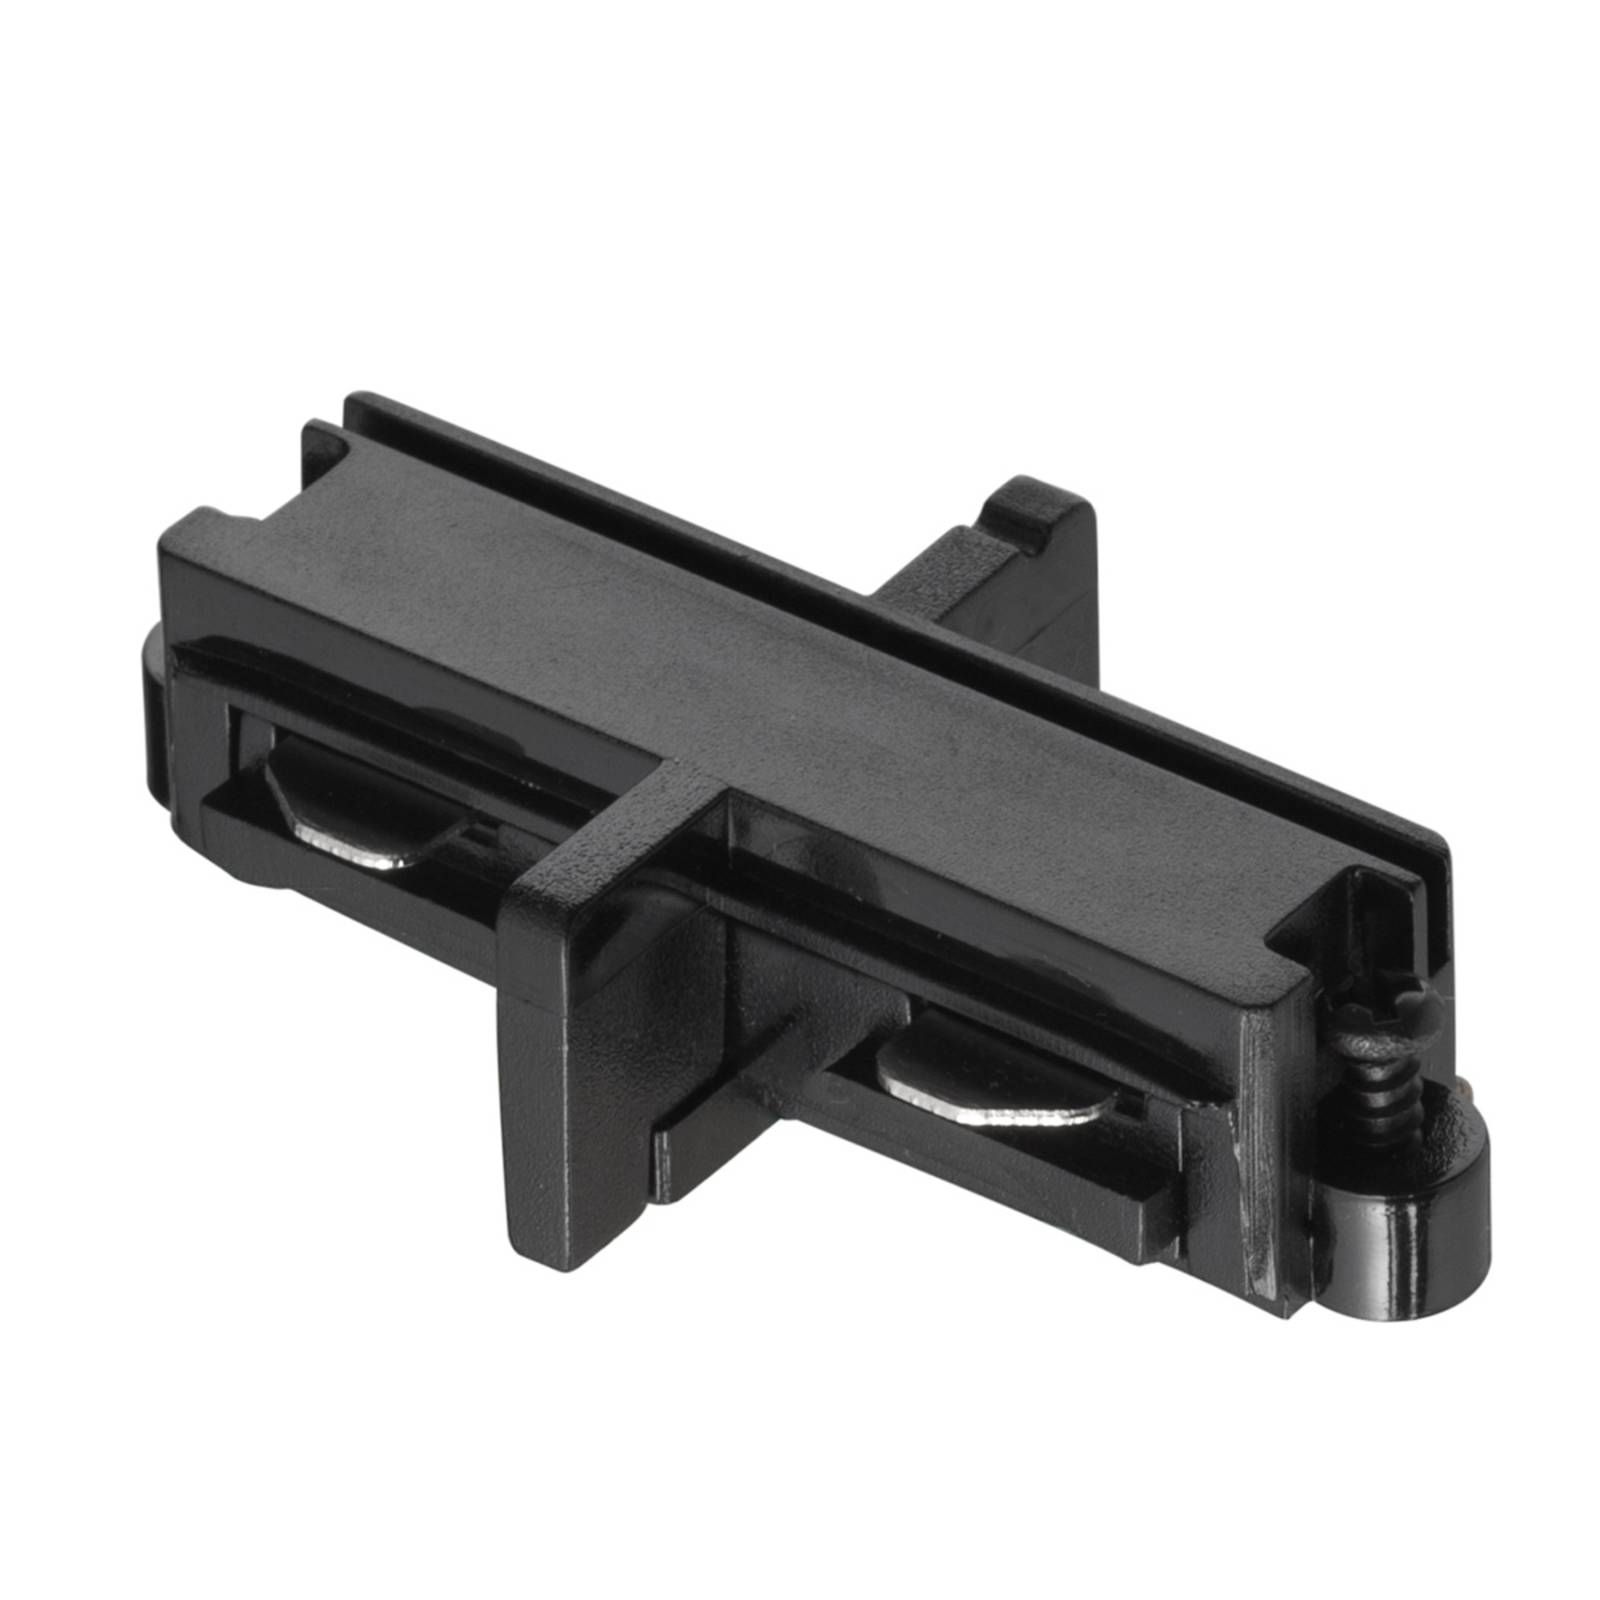 Nordlux Konektor pre prívodnú koľajnicu Link, čierny, PVC, P: 6.5 cm, L: 3.5 cm, K: 1.8cm